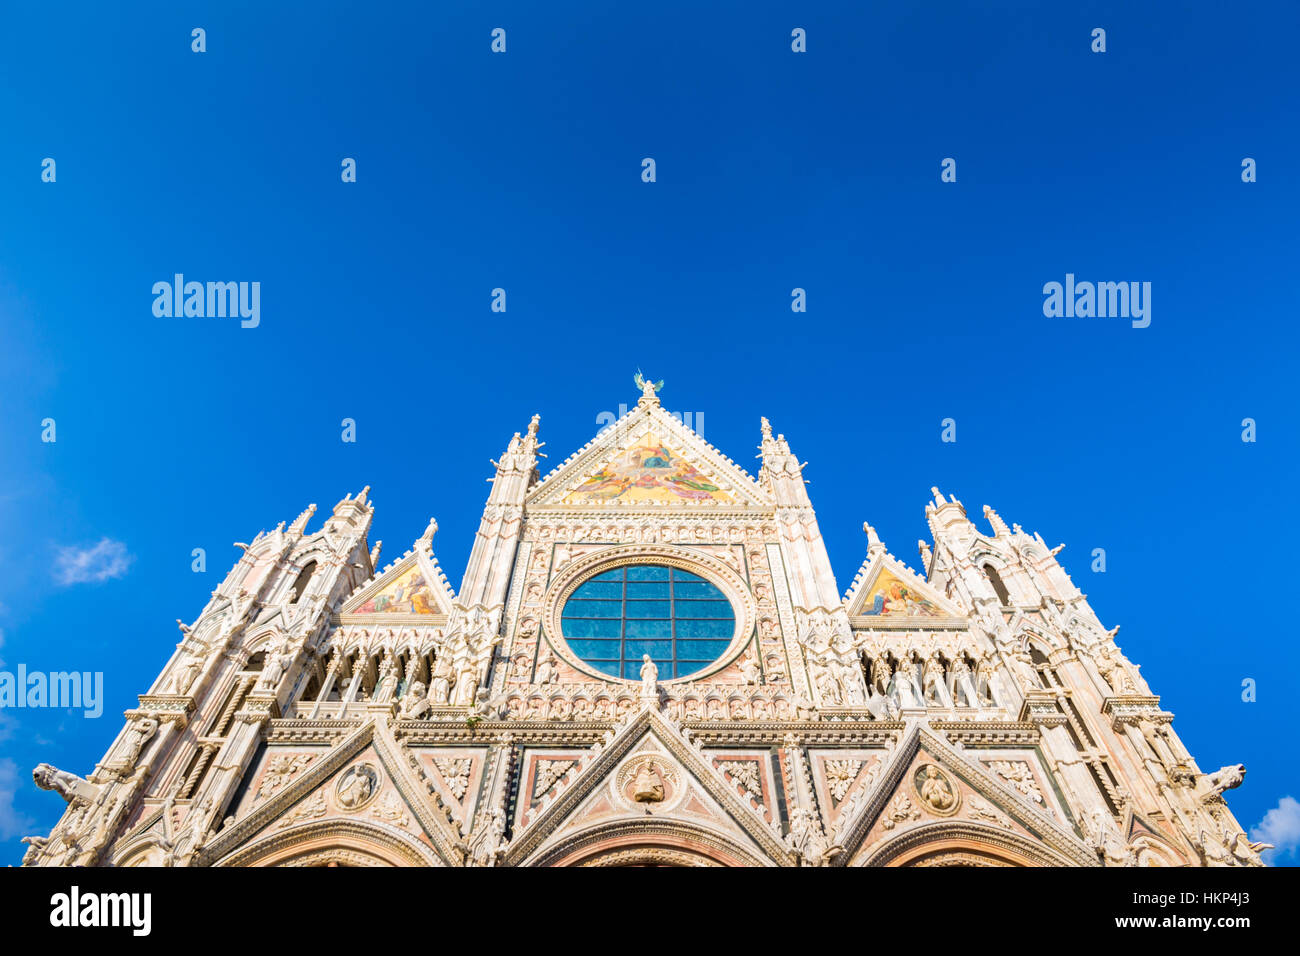 La Cathédrale de Sienne en Italie Banque D'Images